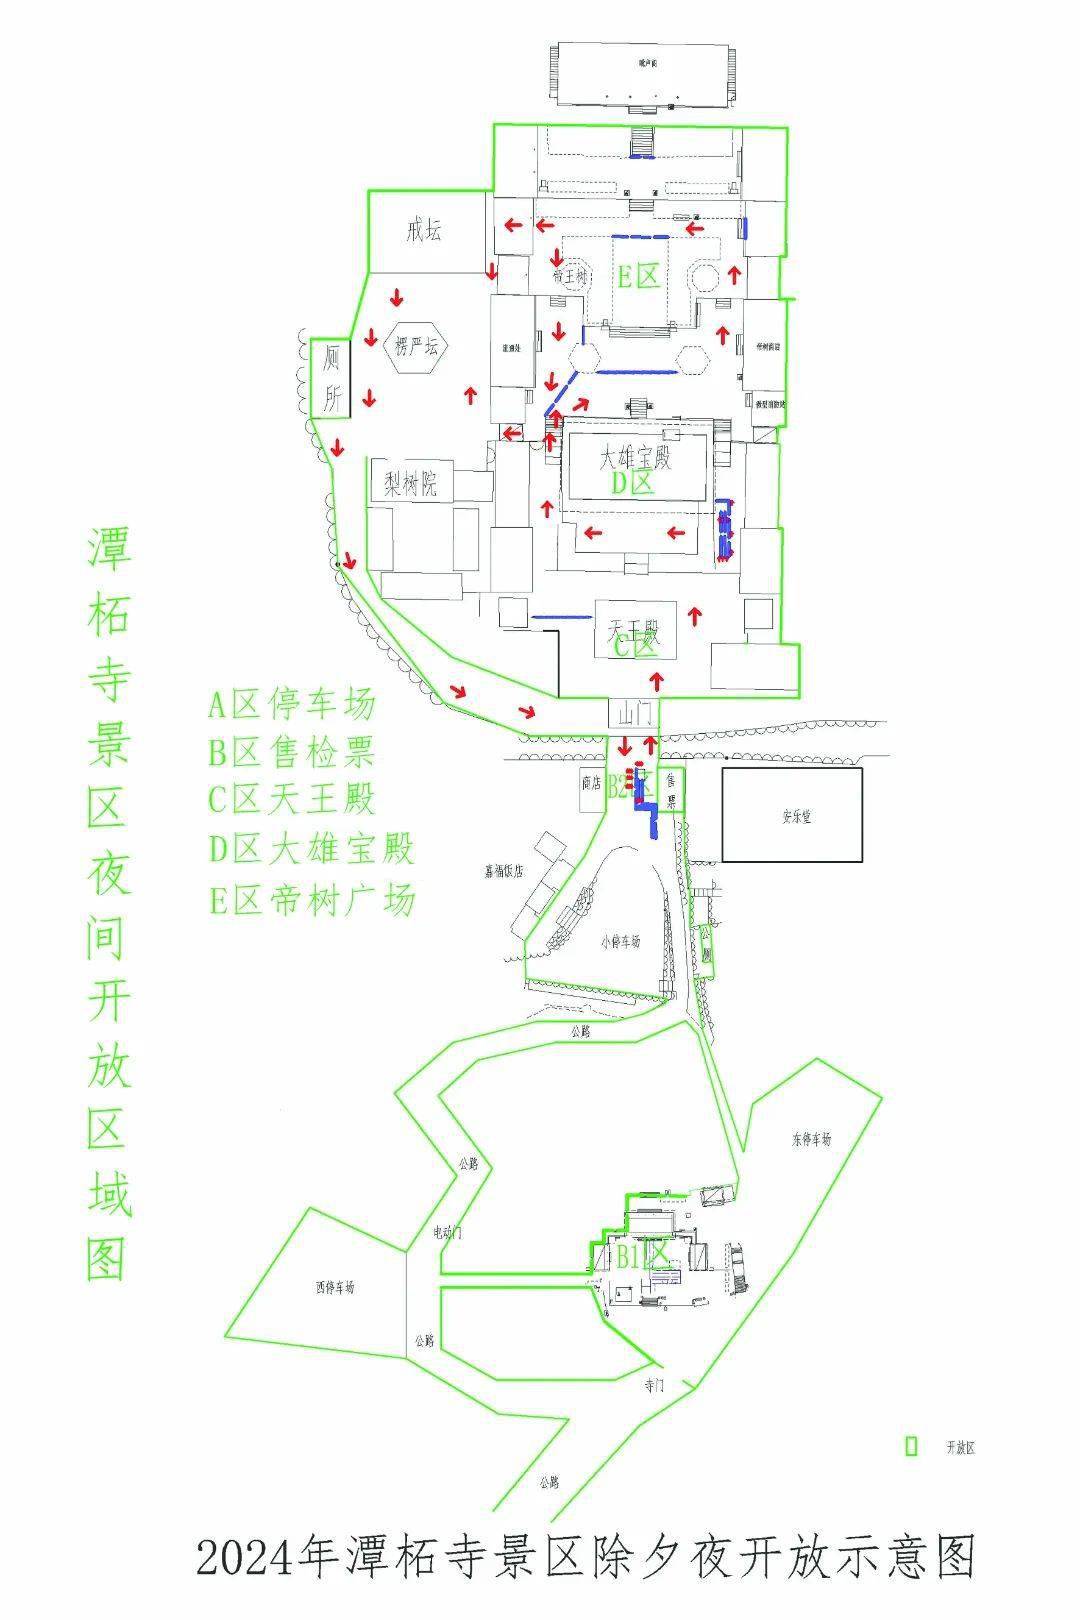 潭柘寺游览地图图片